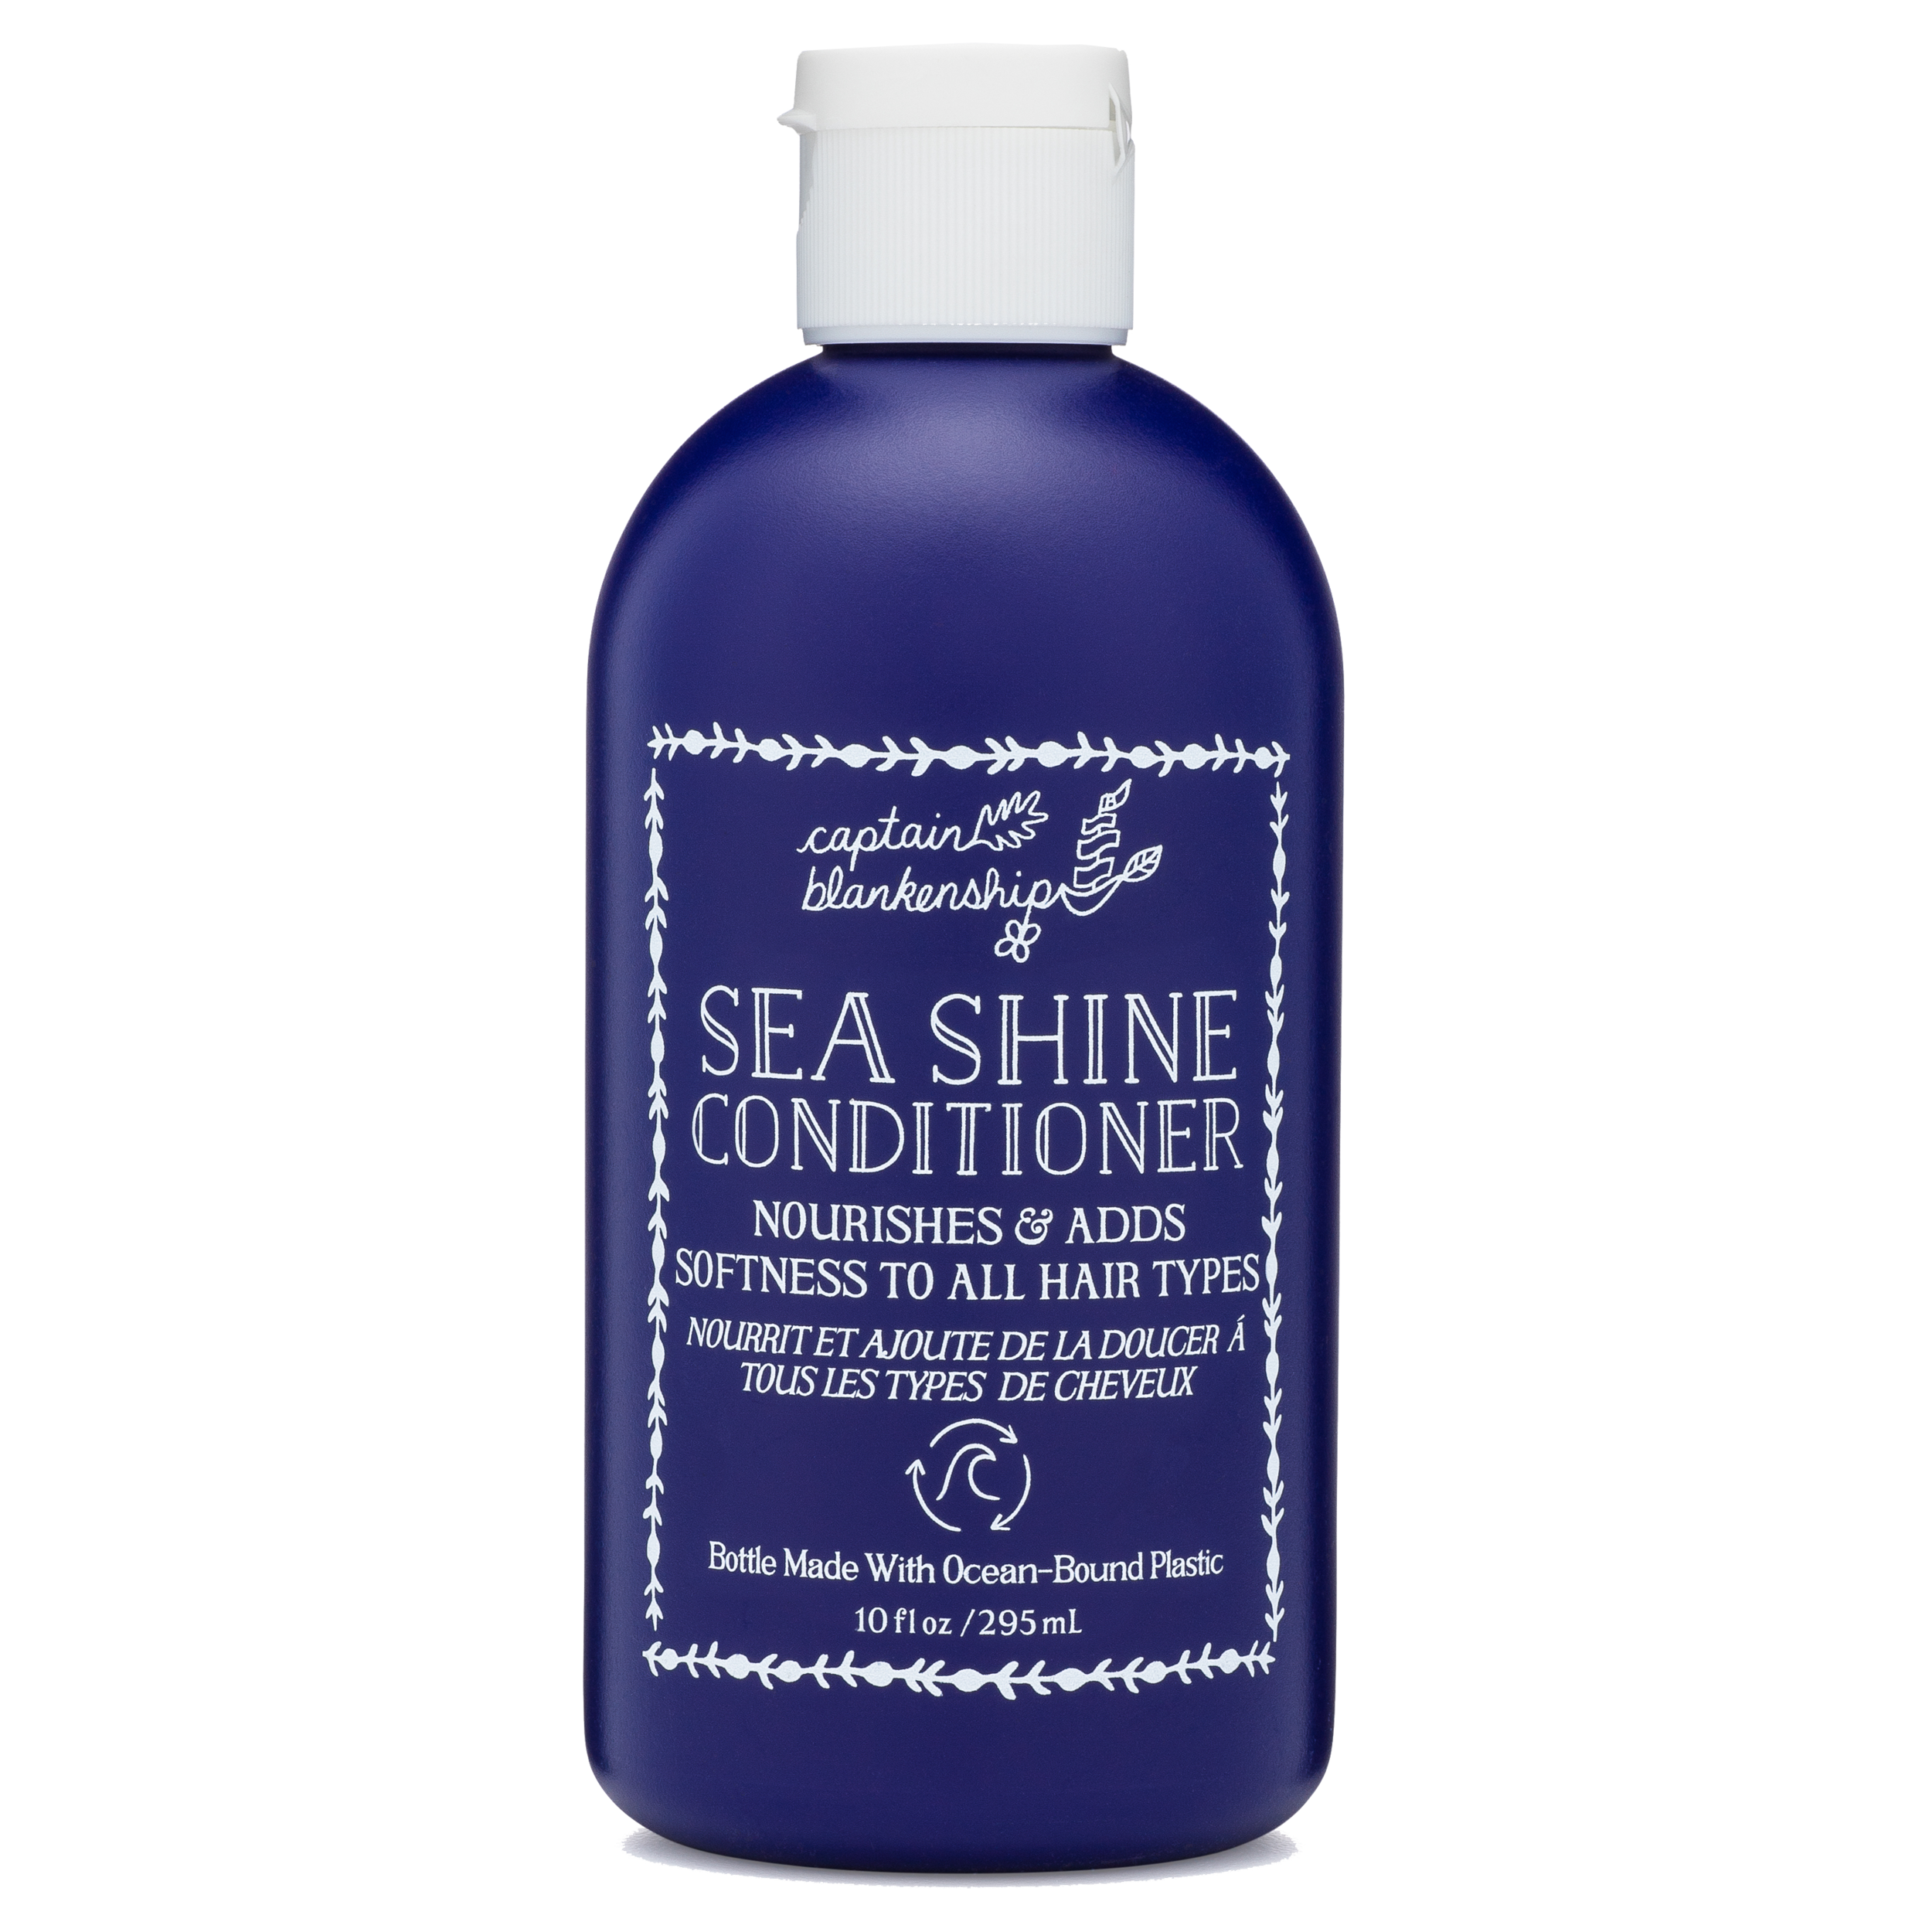 Sea Shine Conditioner